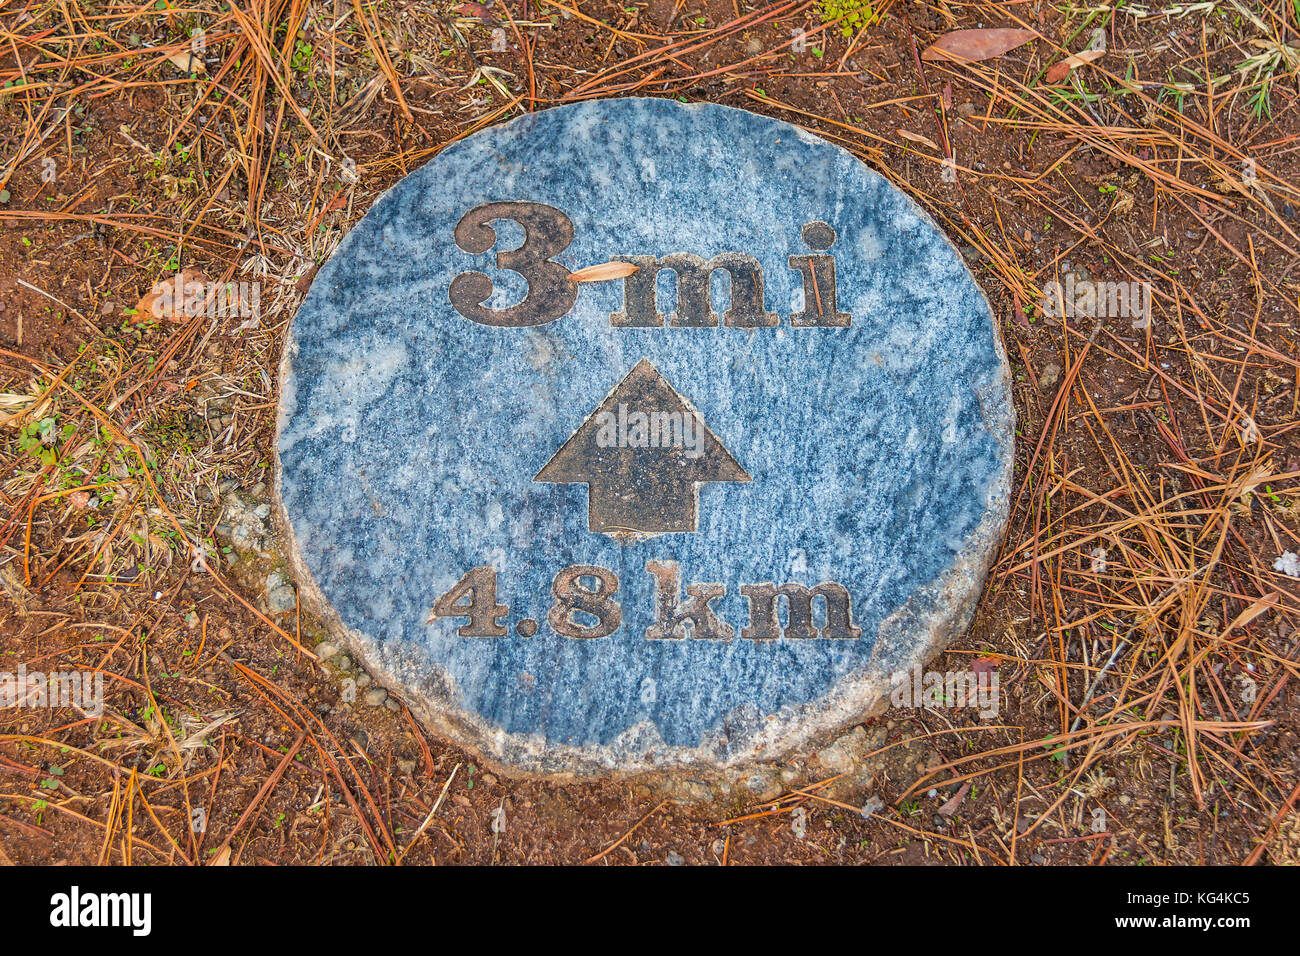 La pietra tonda segno sul terreno che indica la distanza, Stone Mountain Park, Georgia, Stati Uniti d'America Foto Stock